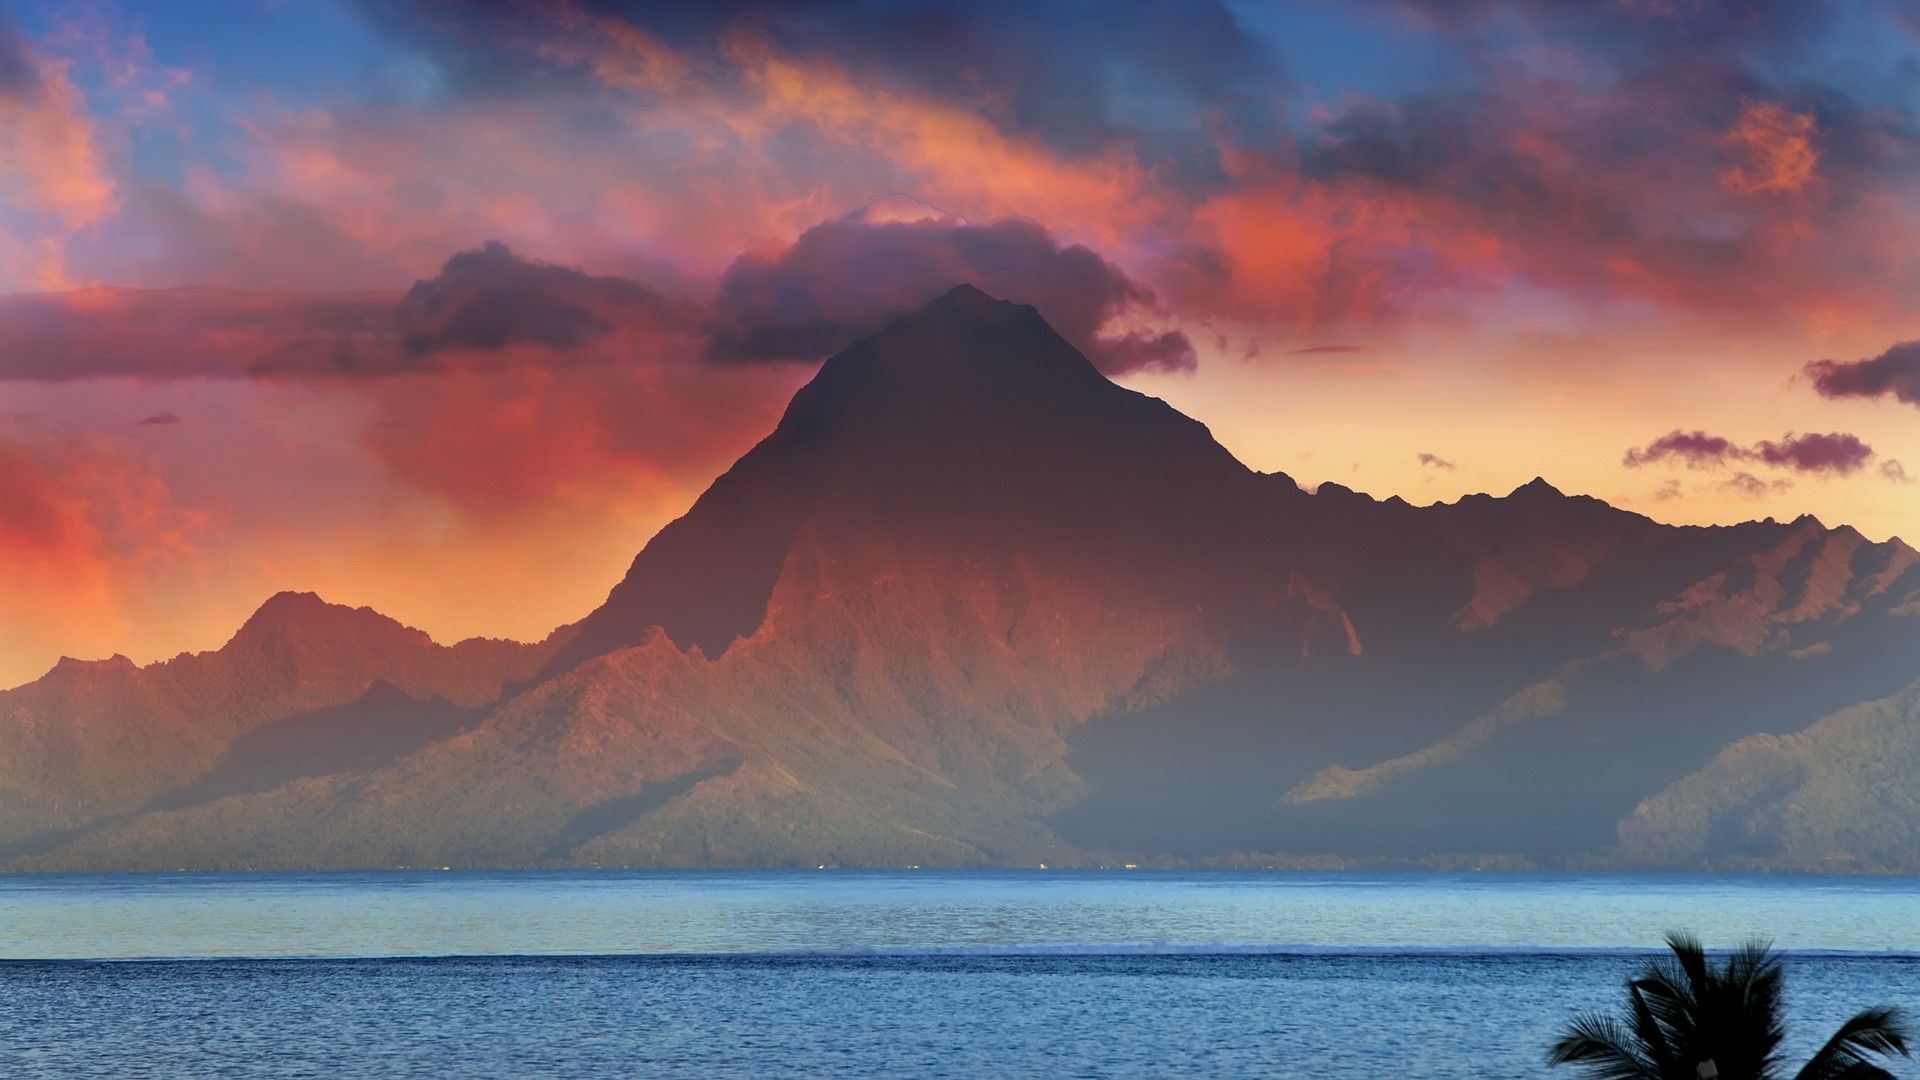 Mountain Orohena at sunset, Tahiti, French Polynesia. Windows 10